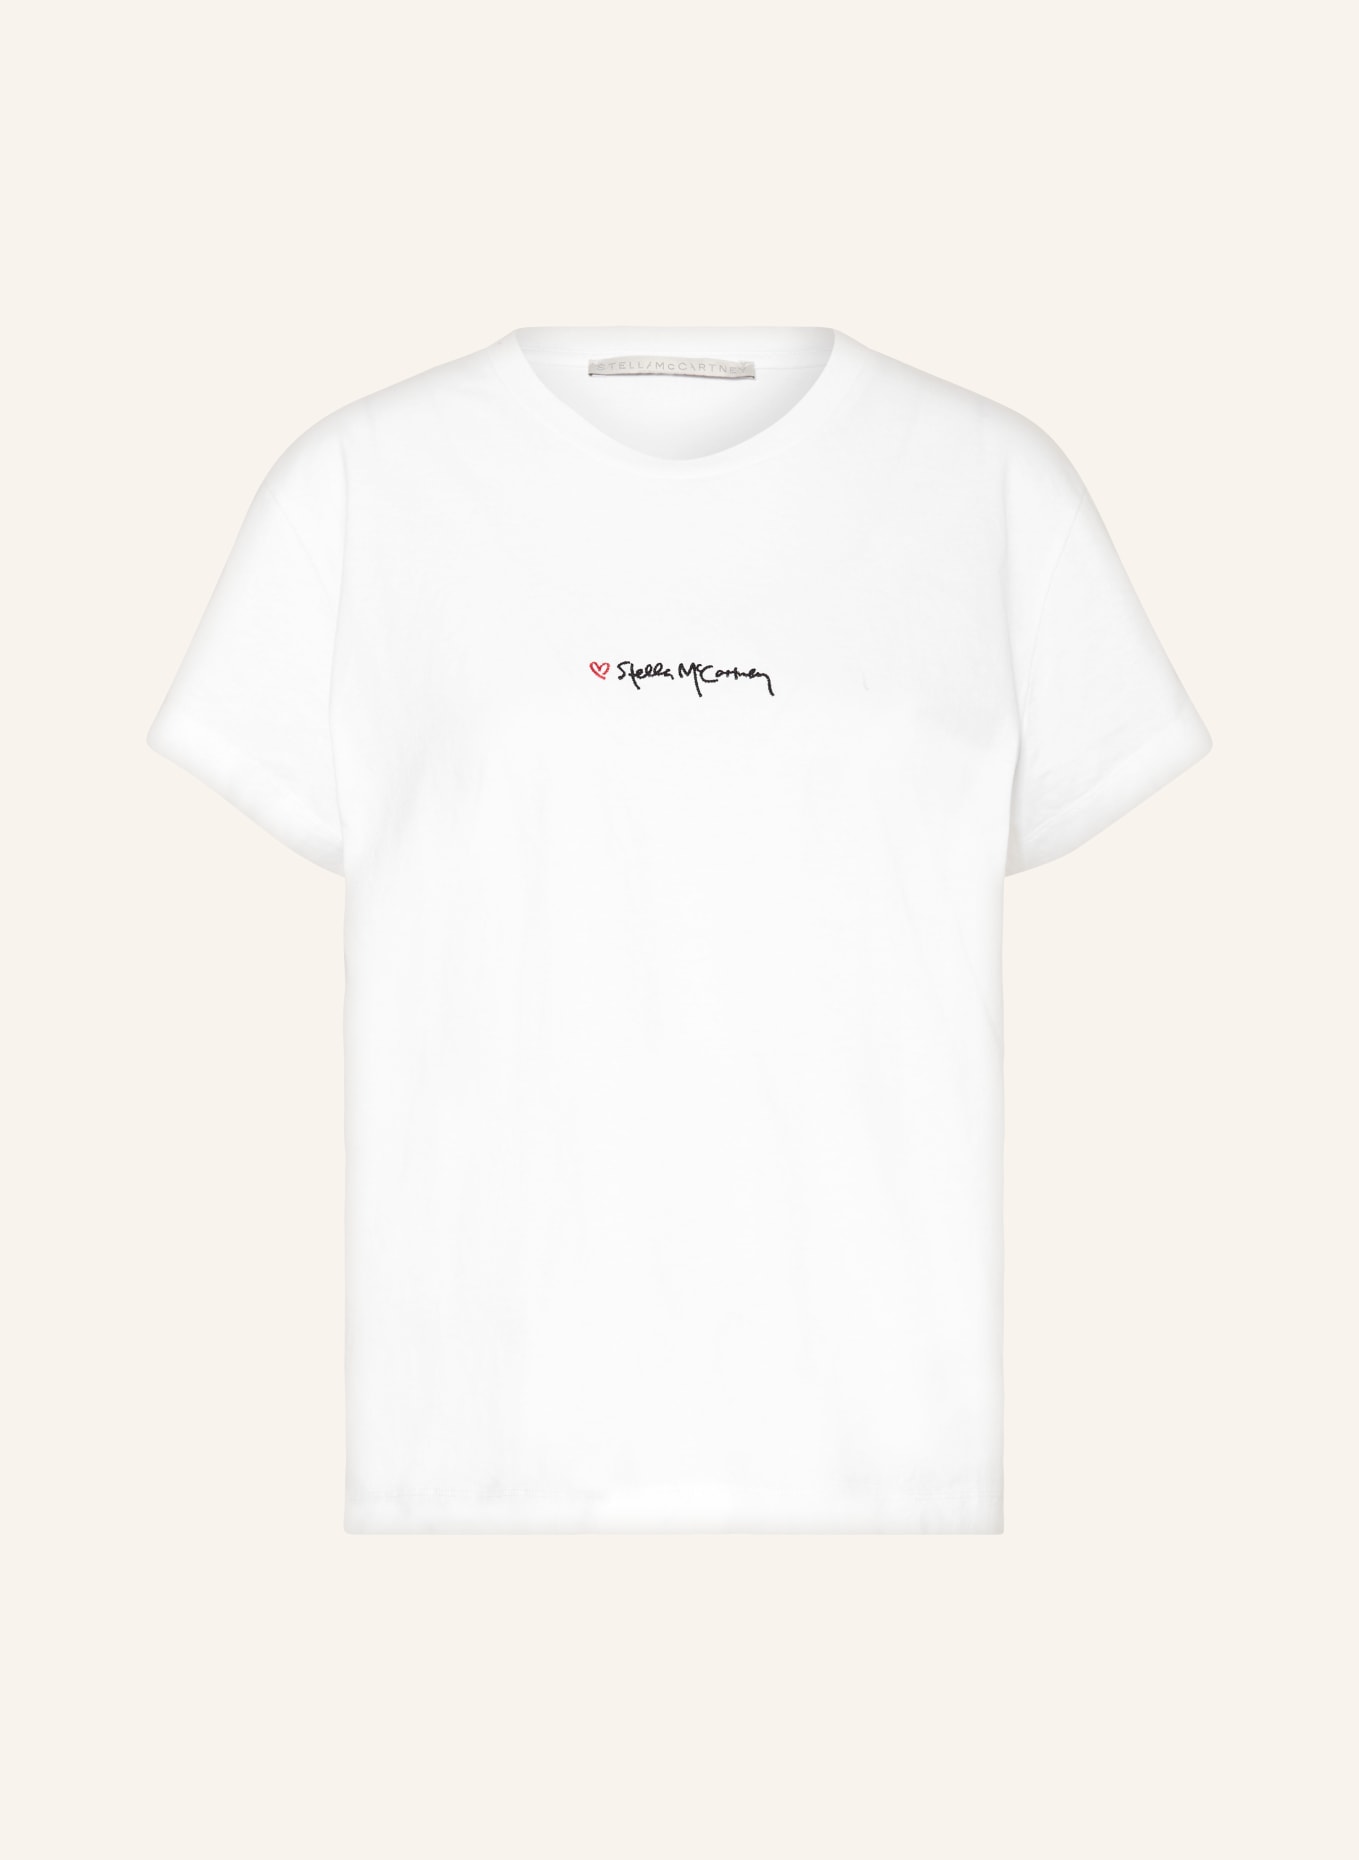 STELLA McCARTNEY T-shirt ICONIC, Color: WHITE (Image 1)